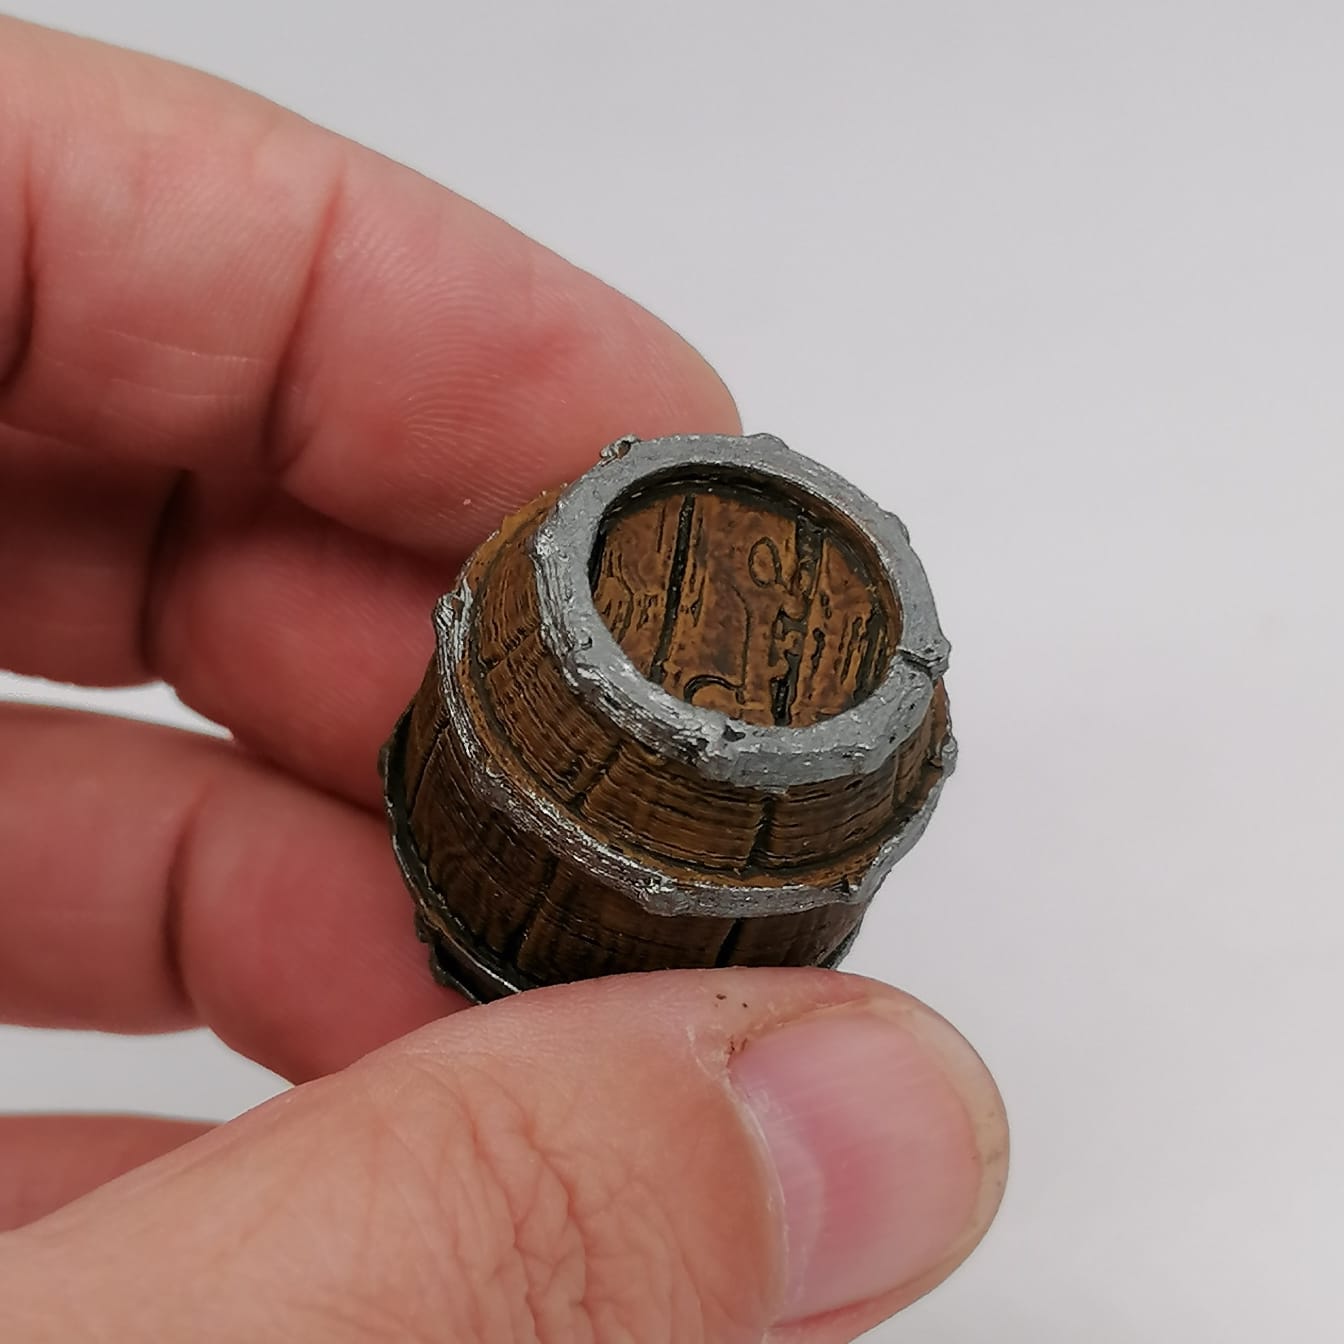 1:12 scale Miniatures Magic Barrels